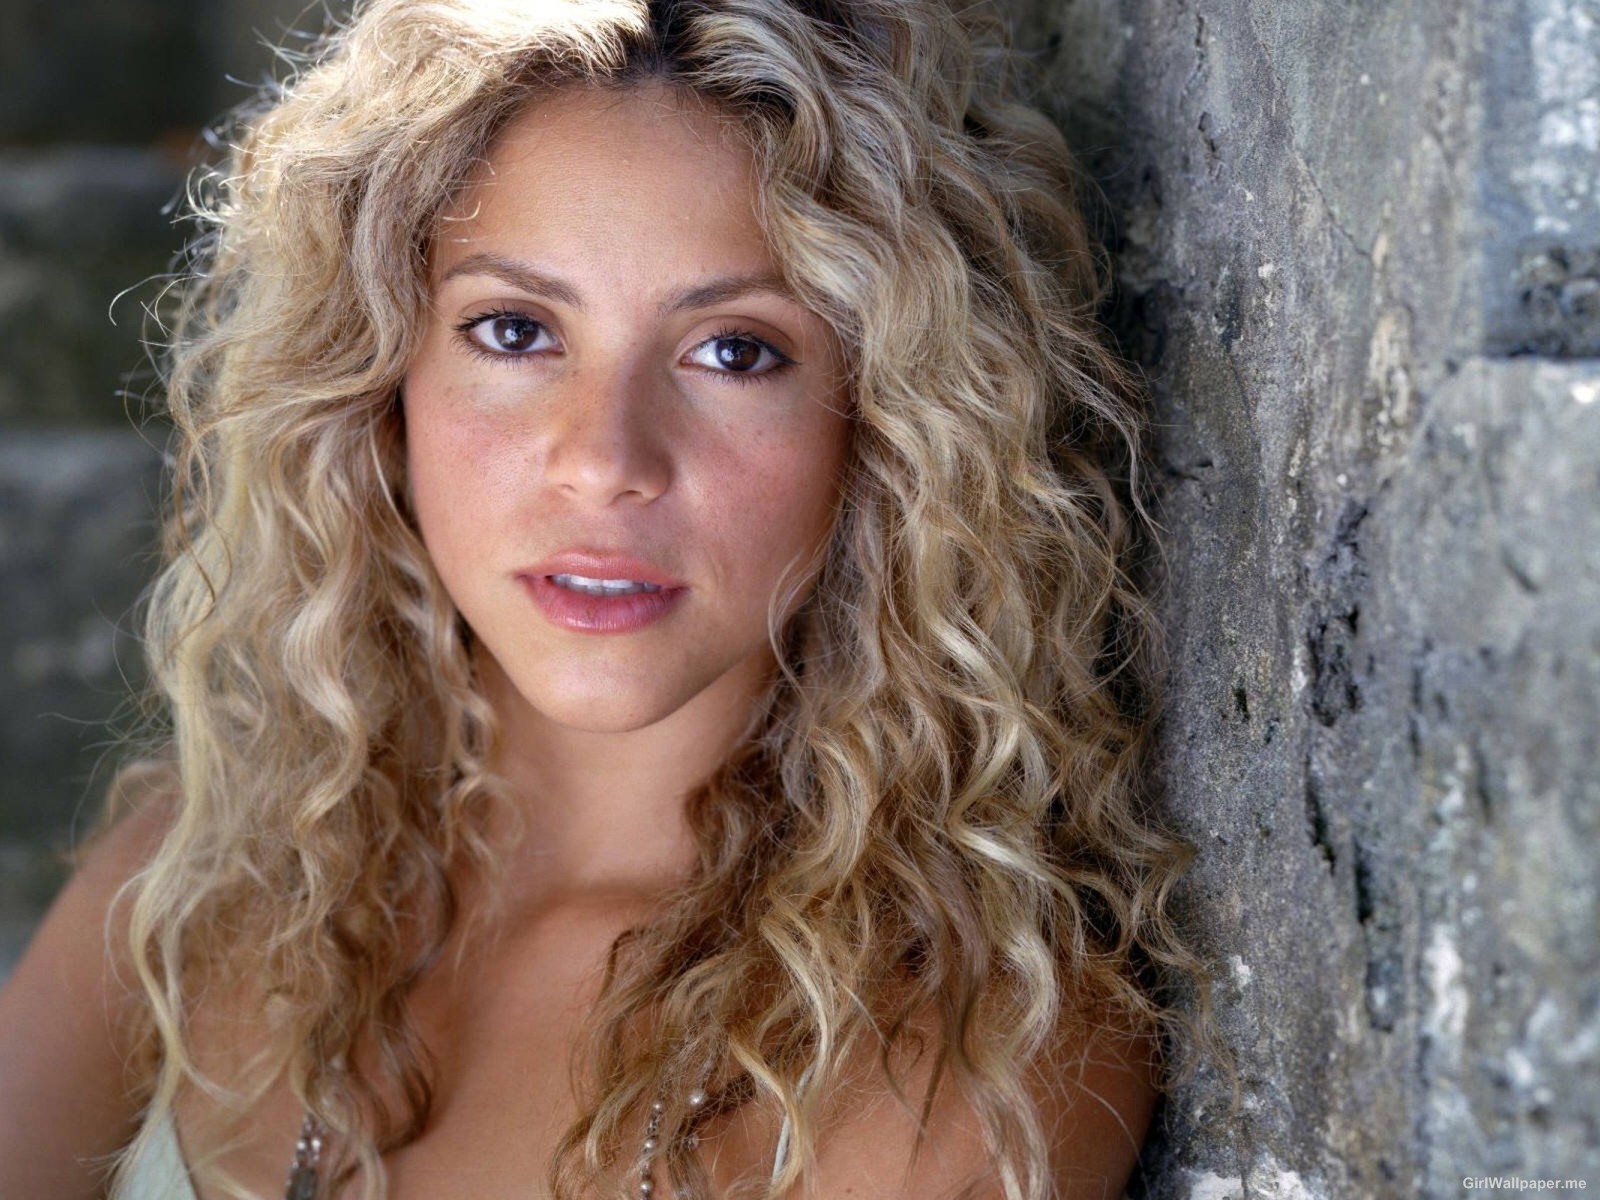 http://3.bp.blogspot.com/--Et7JTNjkVo/UQQ-7lmhA3I/AAAAAAAACGc/SQOIpCvSKg0/s1600/Shakira+Without+Makeup+Gorgeous+Pic+2013+01.jpg